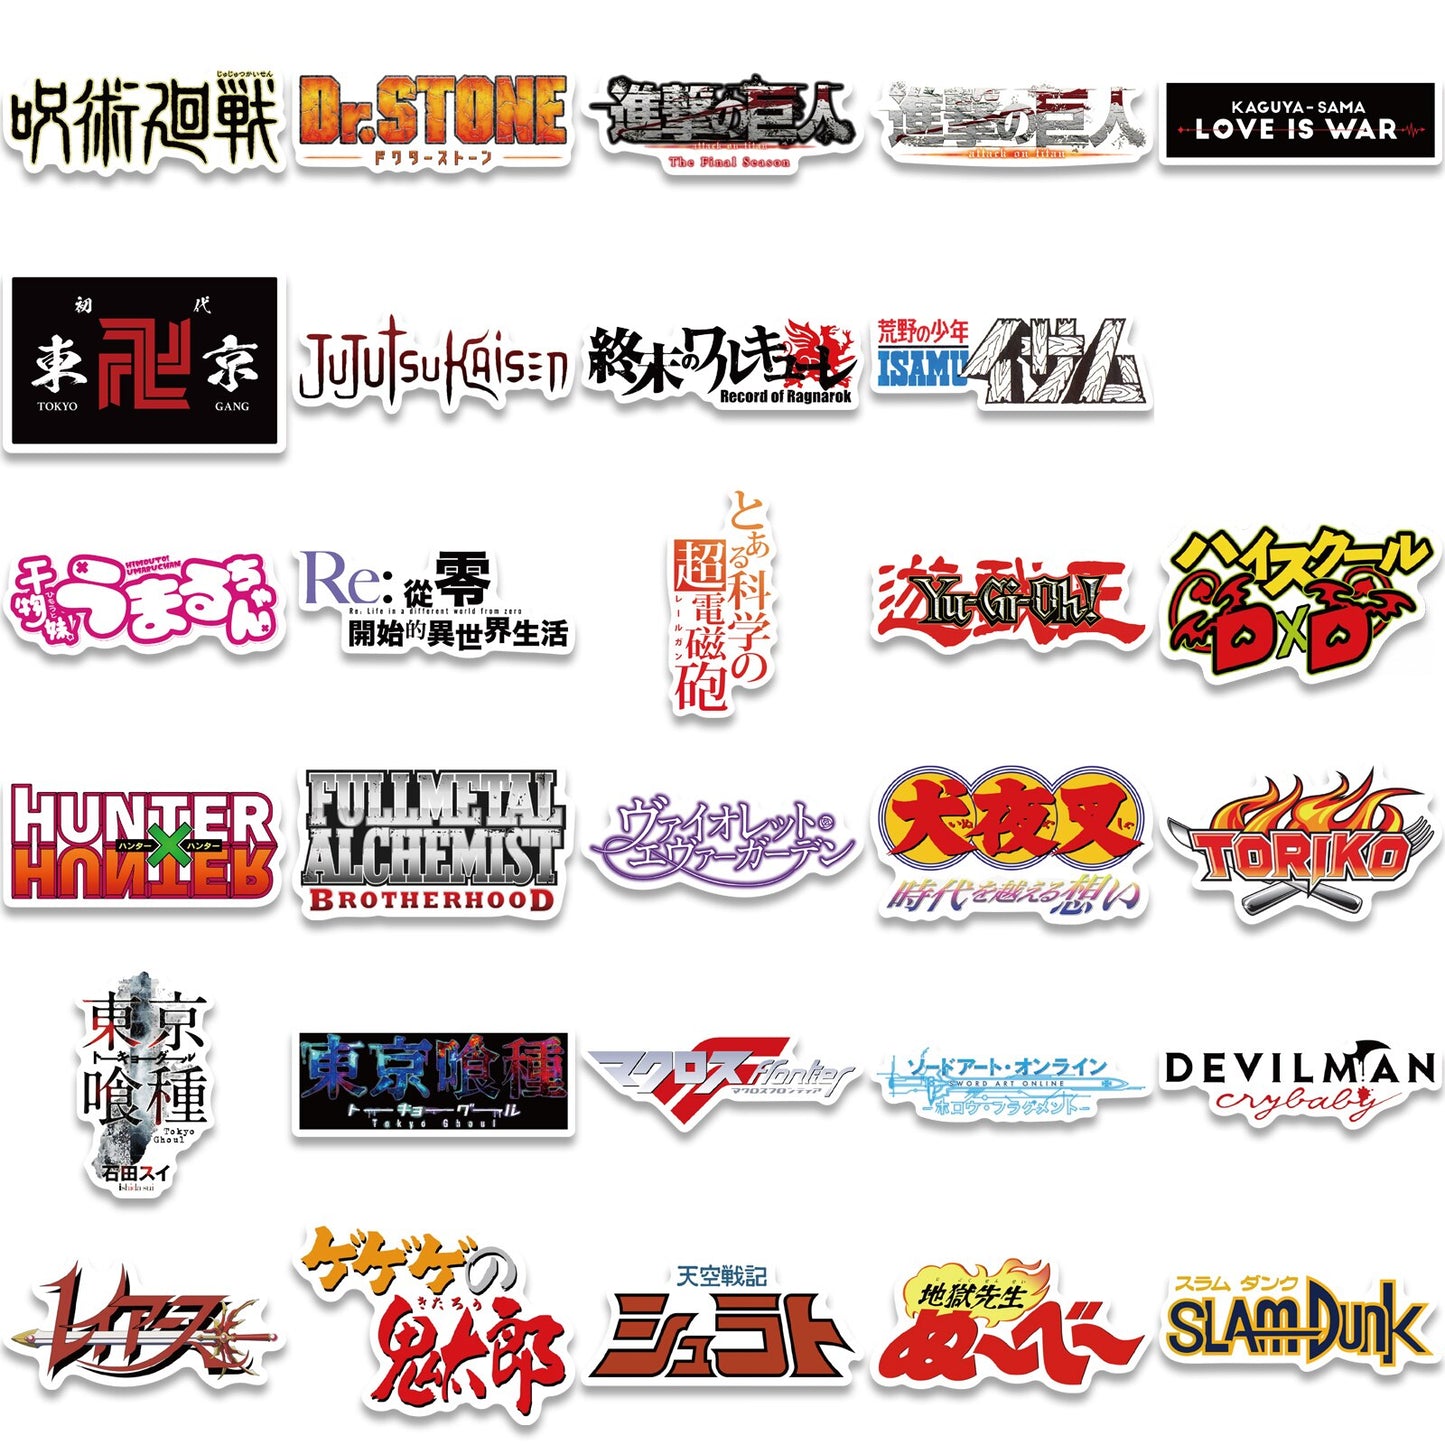 ¡Pegatinas! - Títulos / logotipos de anime